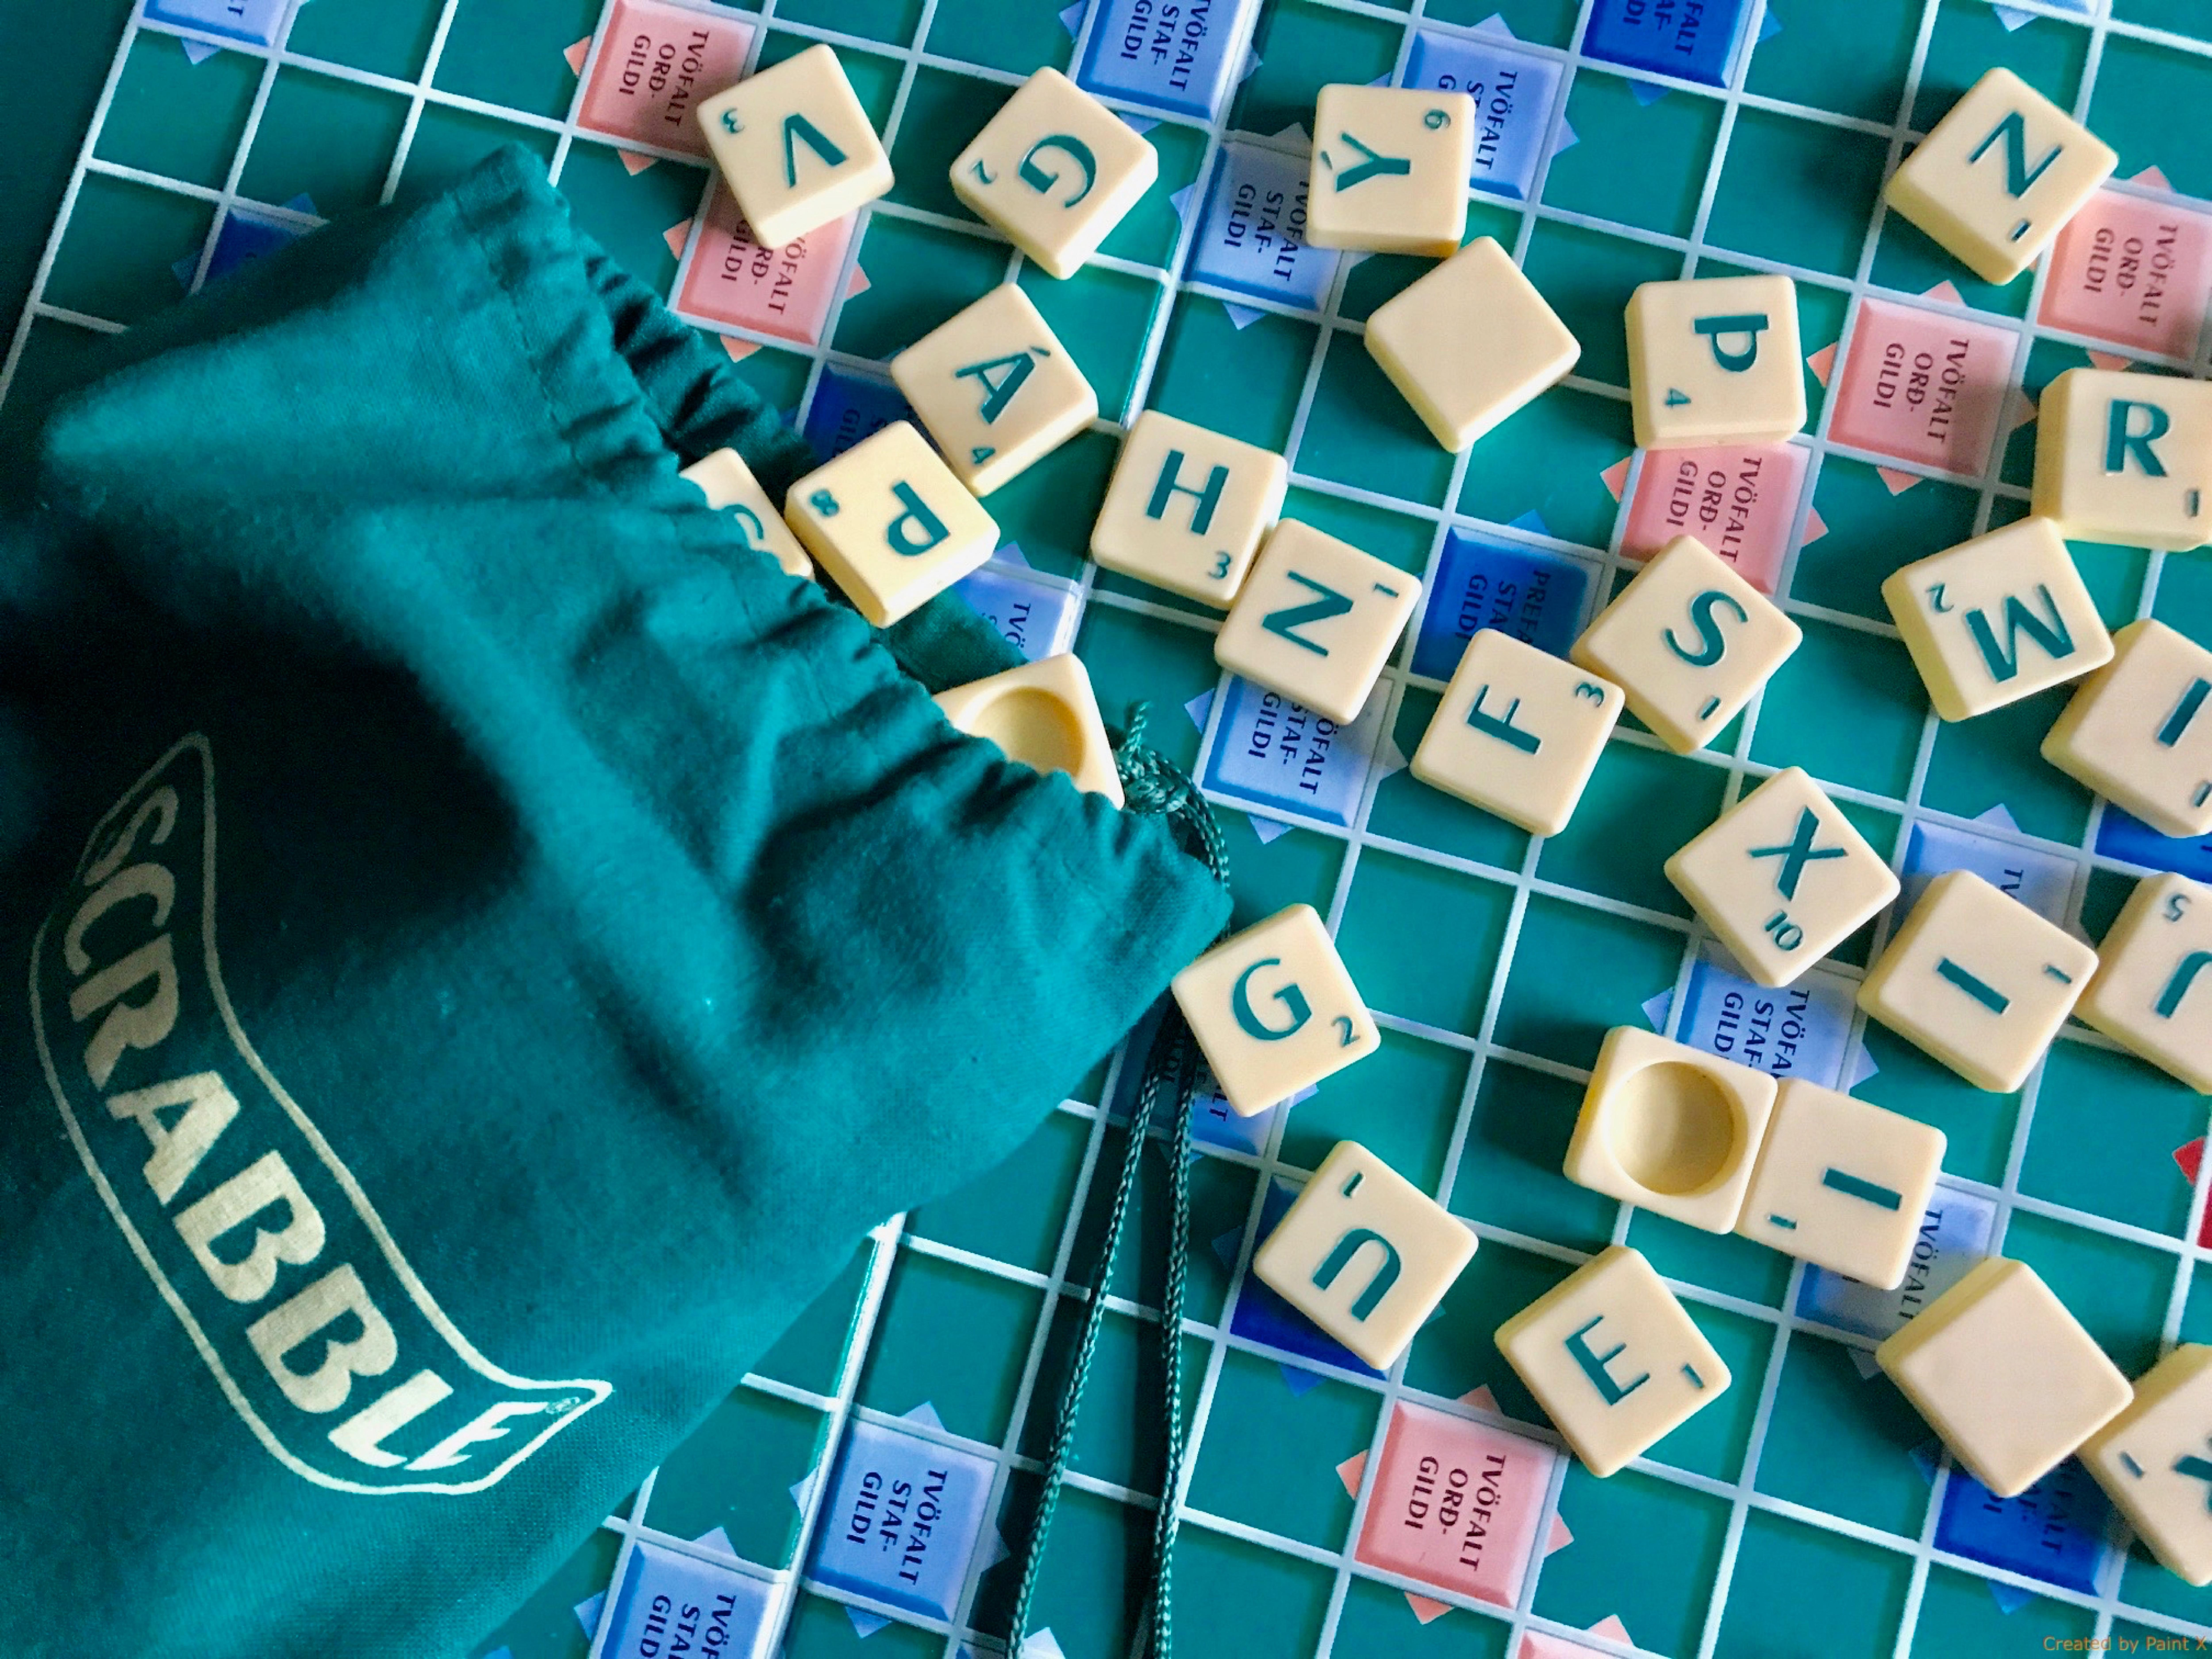 Tarlouze, nabot, femmelette : Scrabble retire une vingtaine de mots  offensants de sa liste officielle